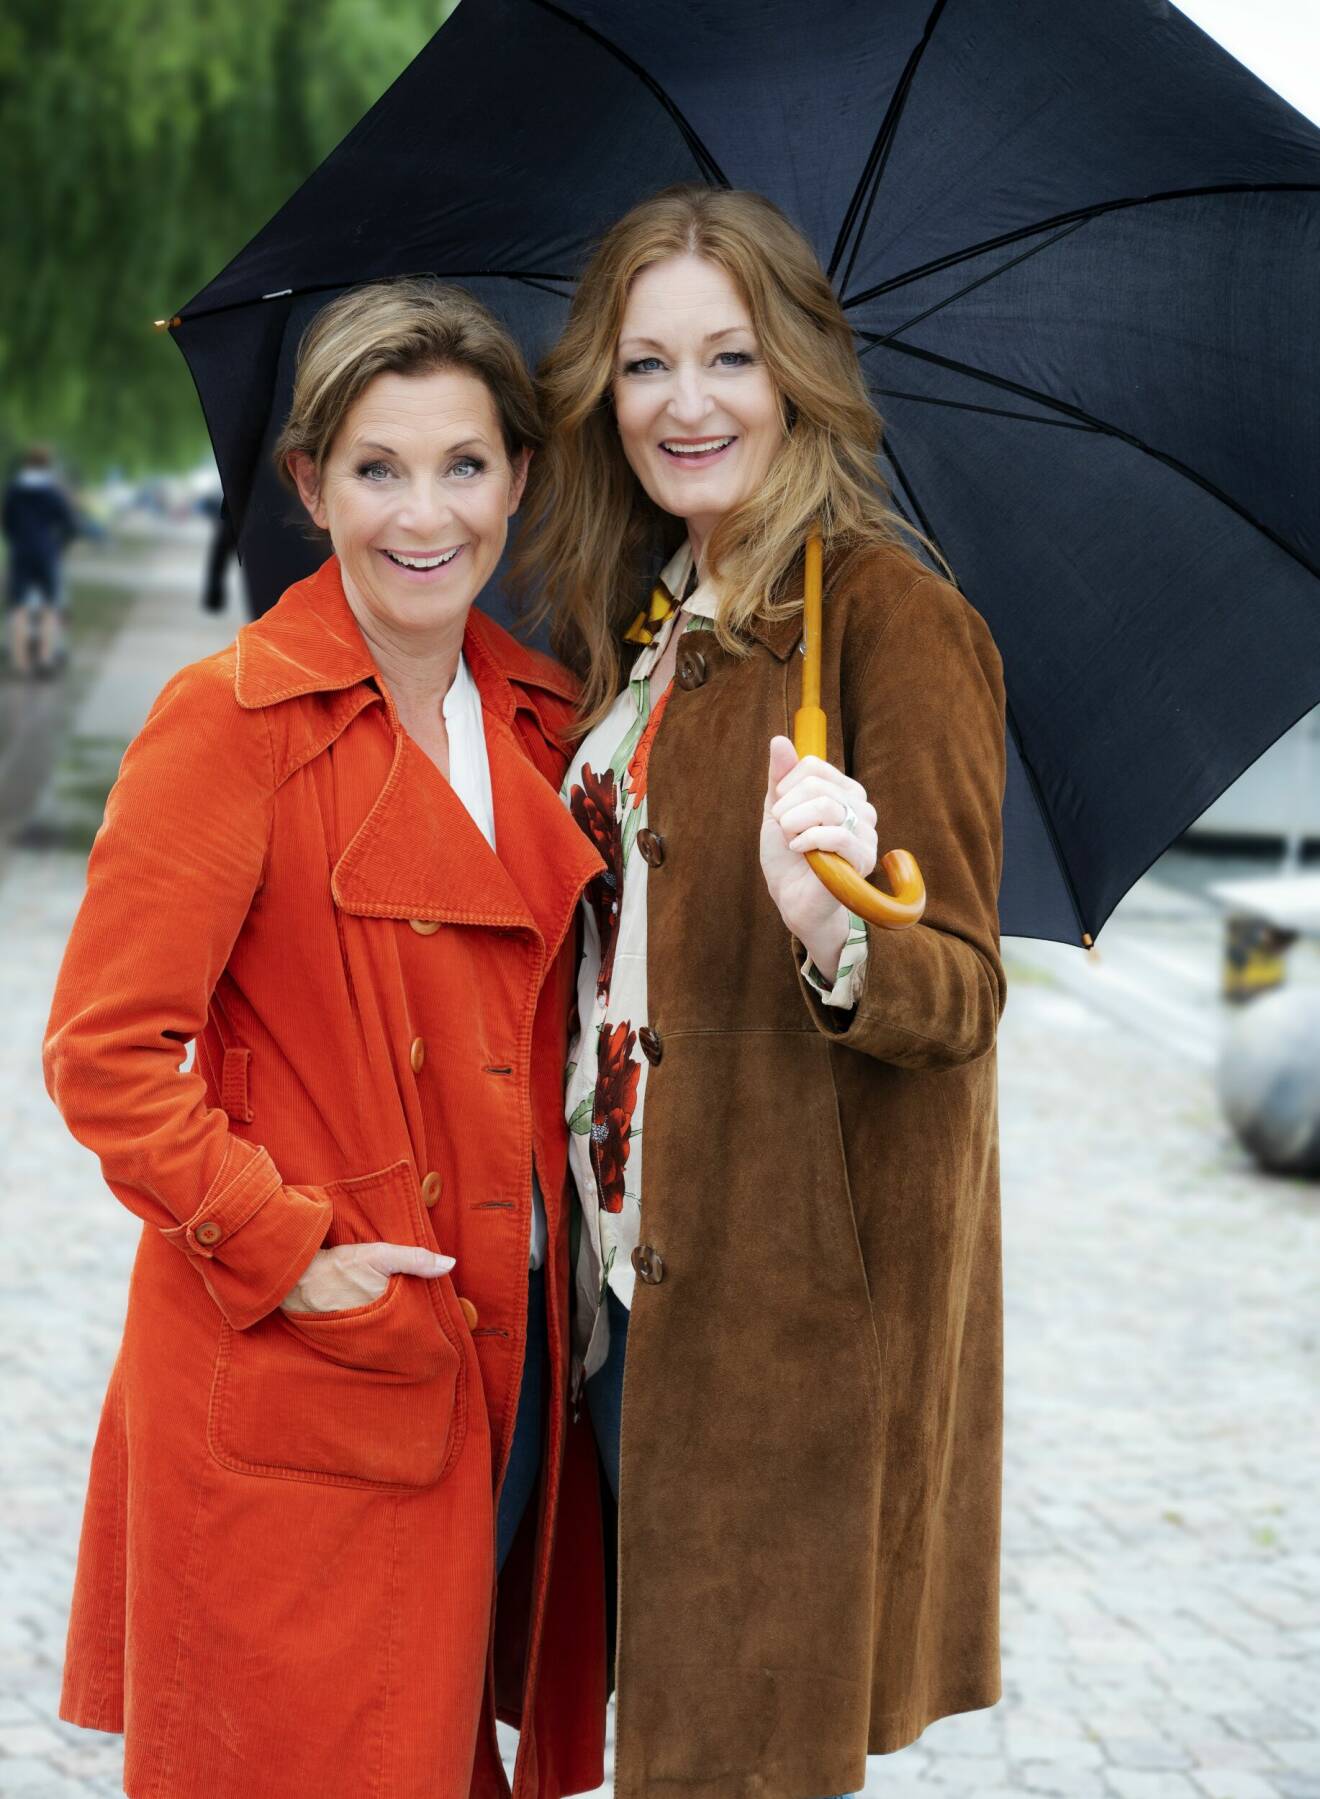 Sångerskorna Helen Sjöholm och Anna Stadling står skrattande under ett paraply.